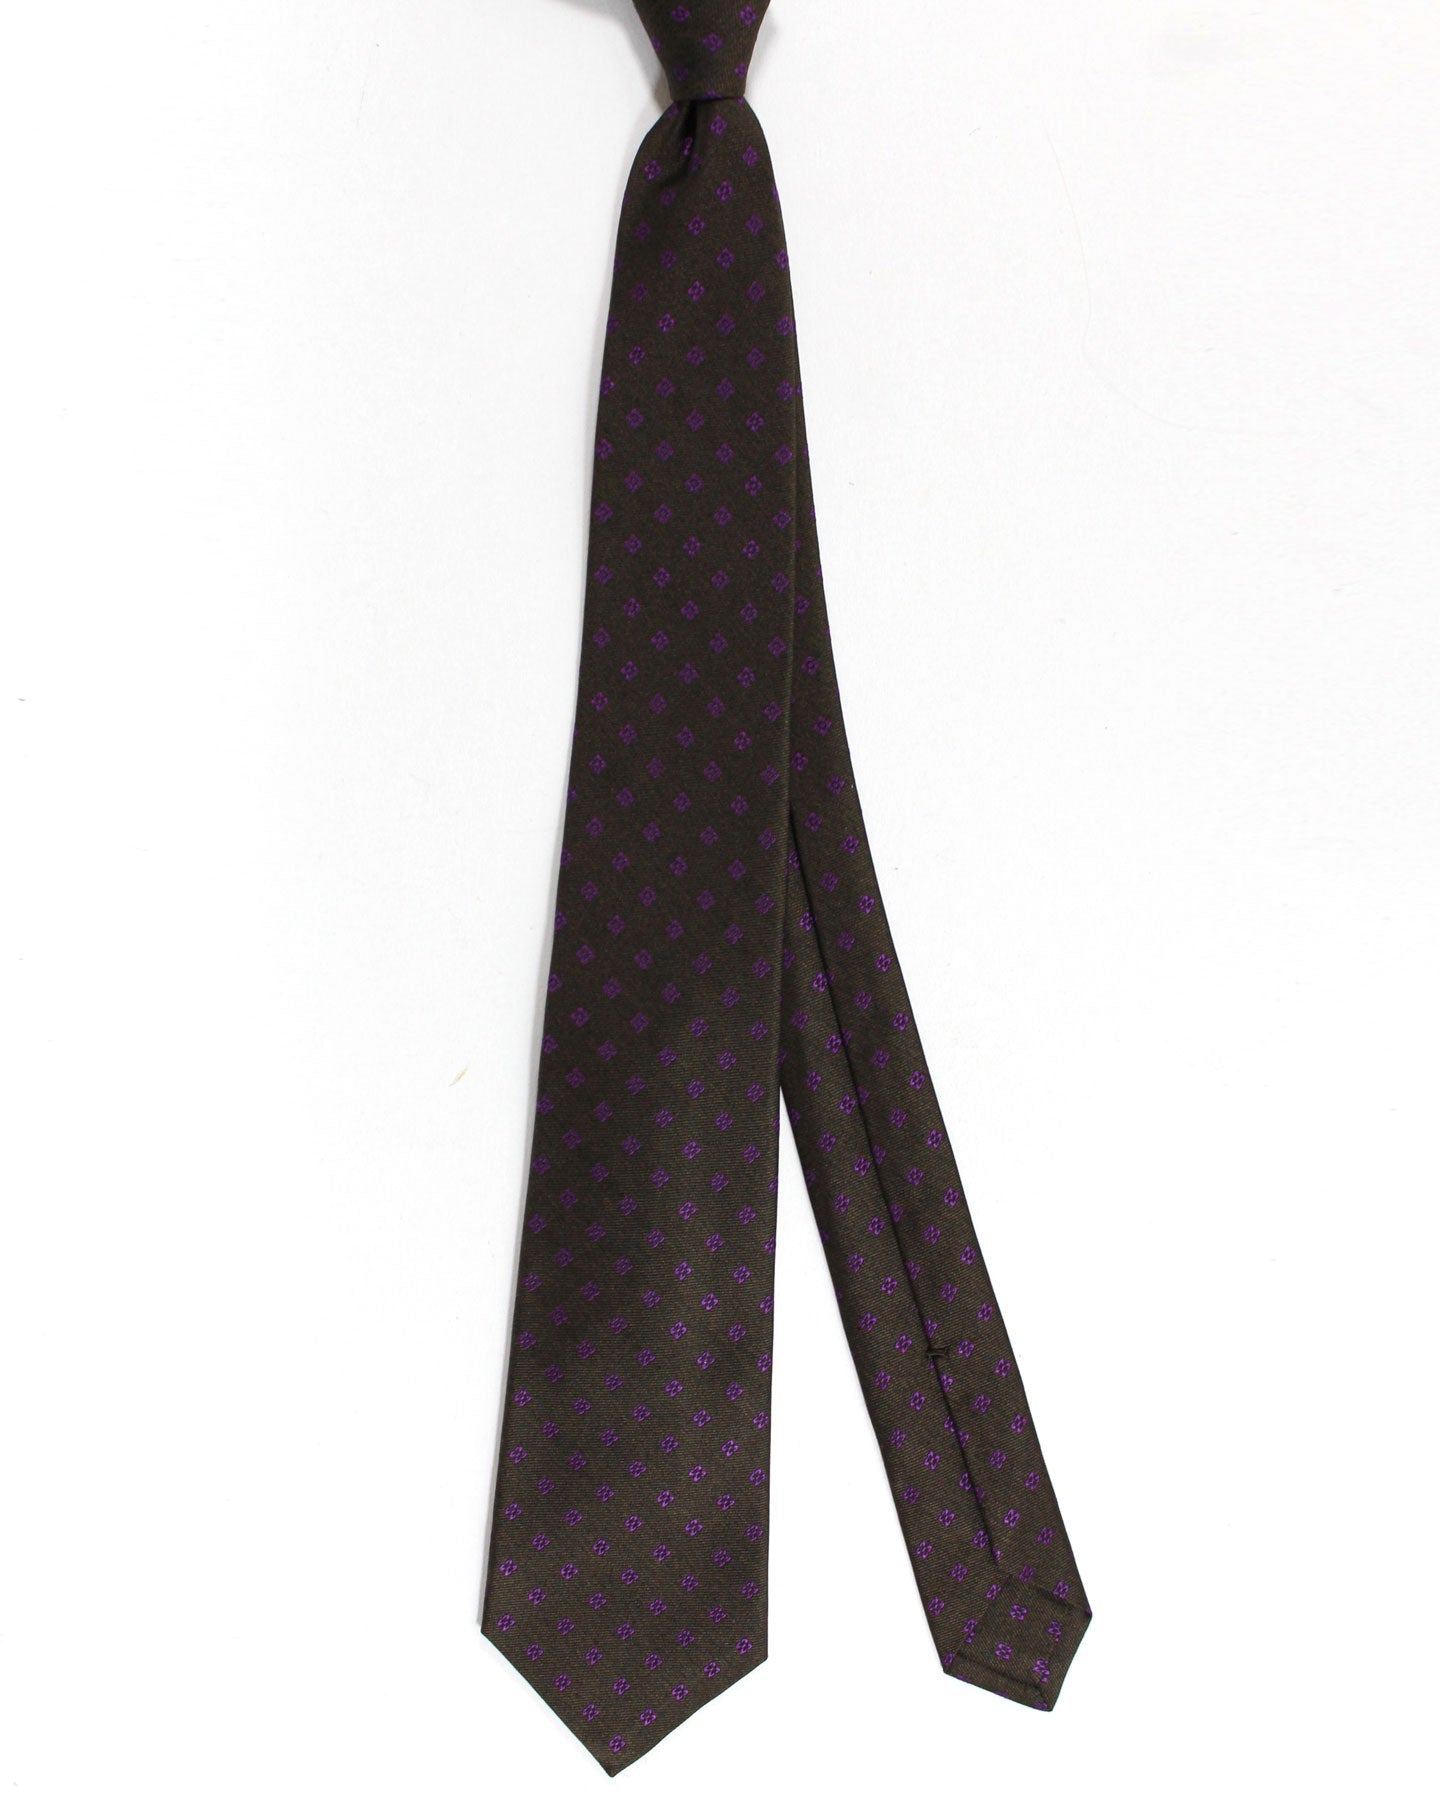 Kiton Silk Tie Dark Brown Purple Geometric Design - Sevenfold Necktie